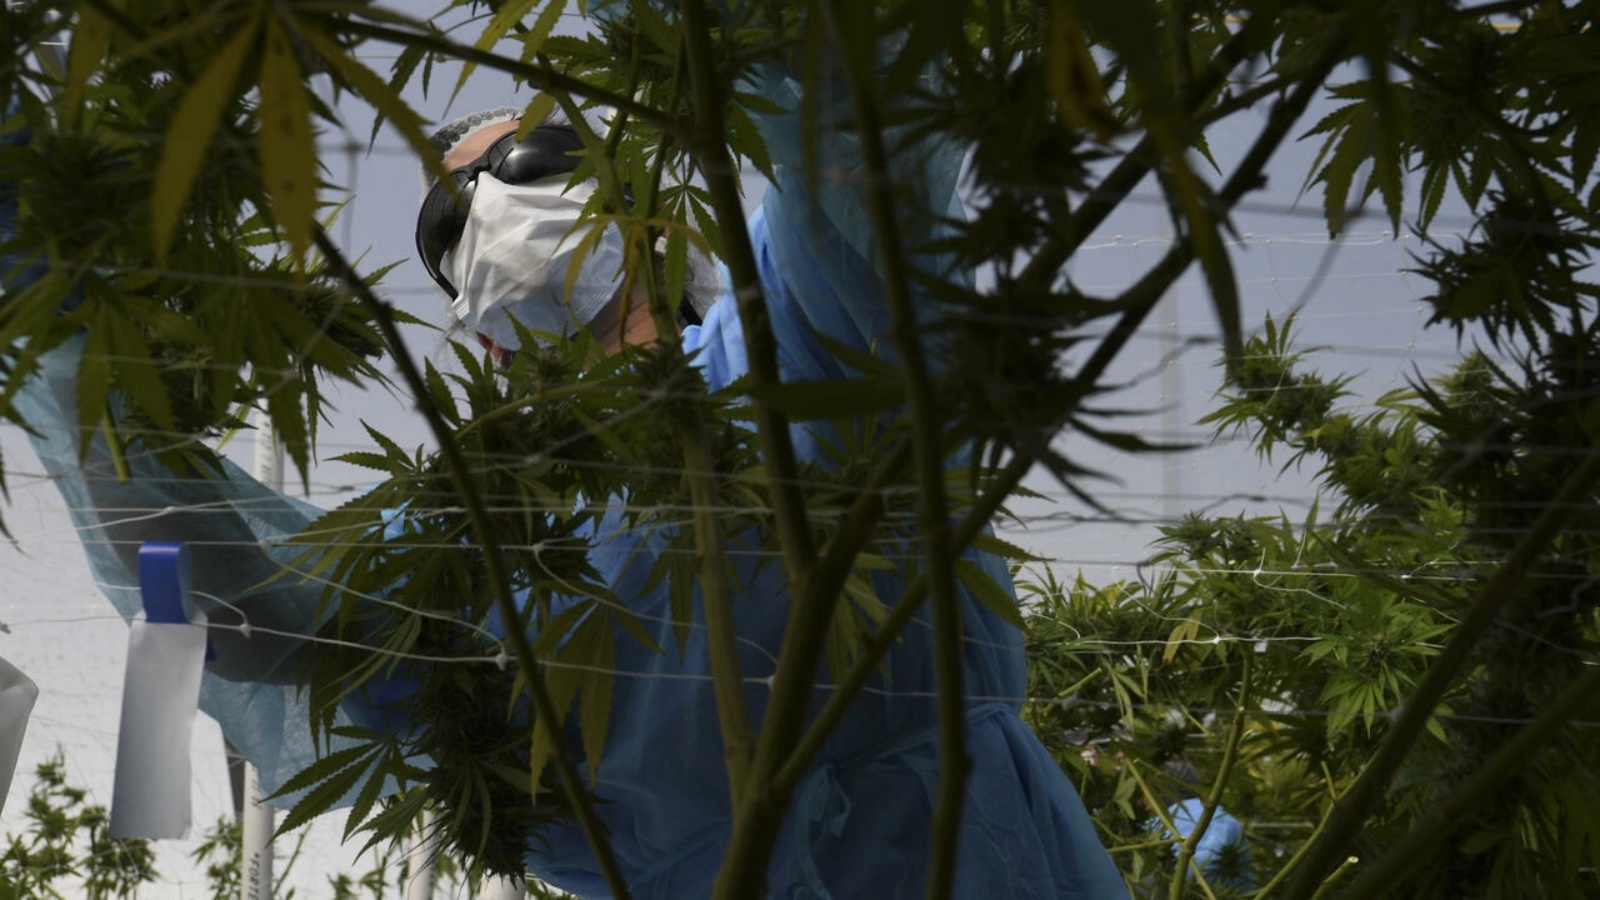 عامل يحصد الماريجوانا في مركزٍ زراعيّ في جنوب الأوروغواي بتاريخ 17 أبريل 2019